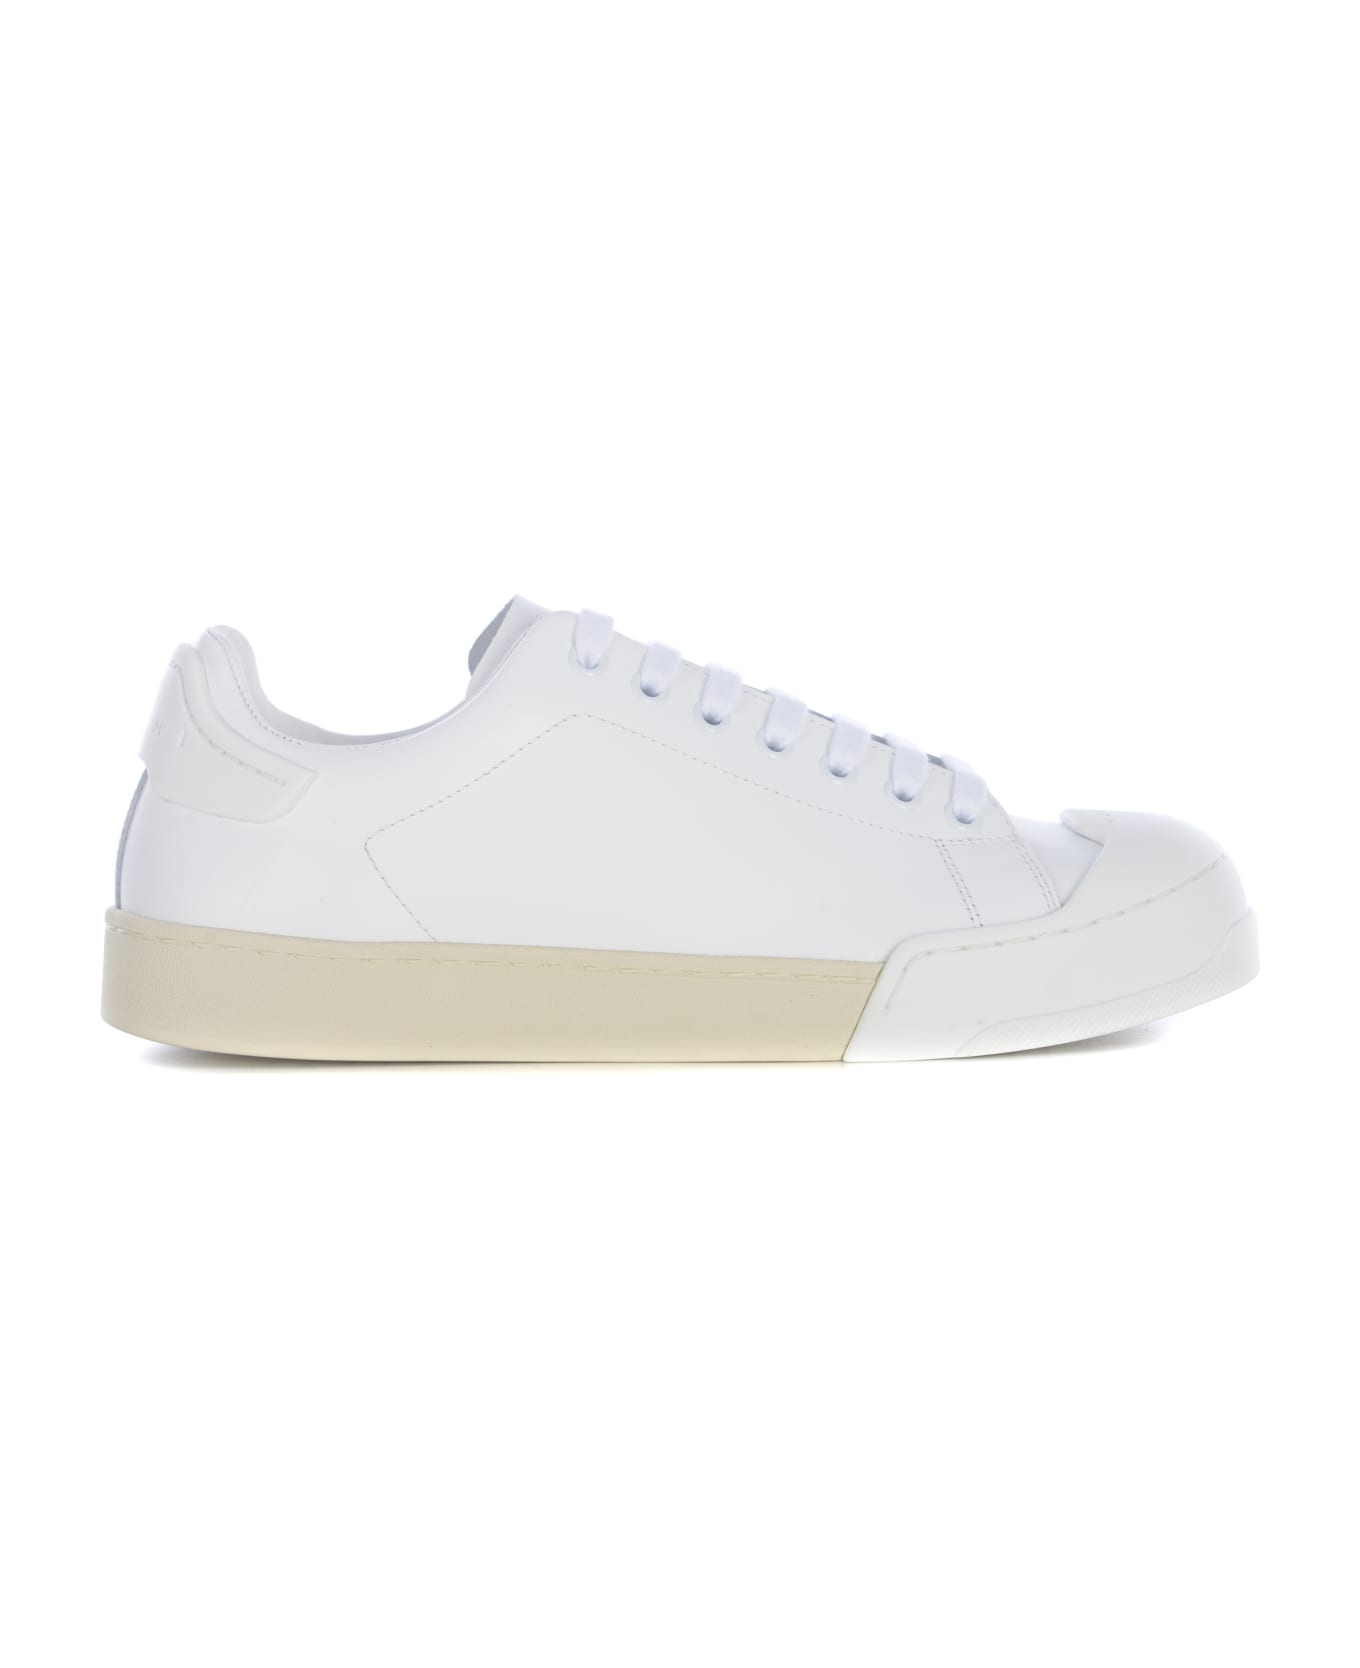 Marni White Leather Sneakers - LILYWHITELILYWHITE